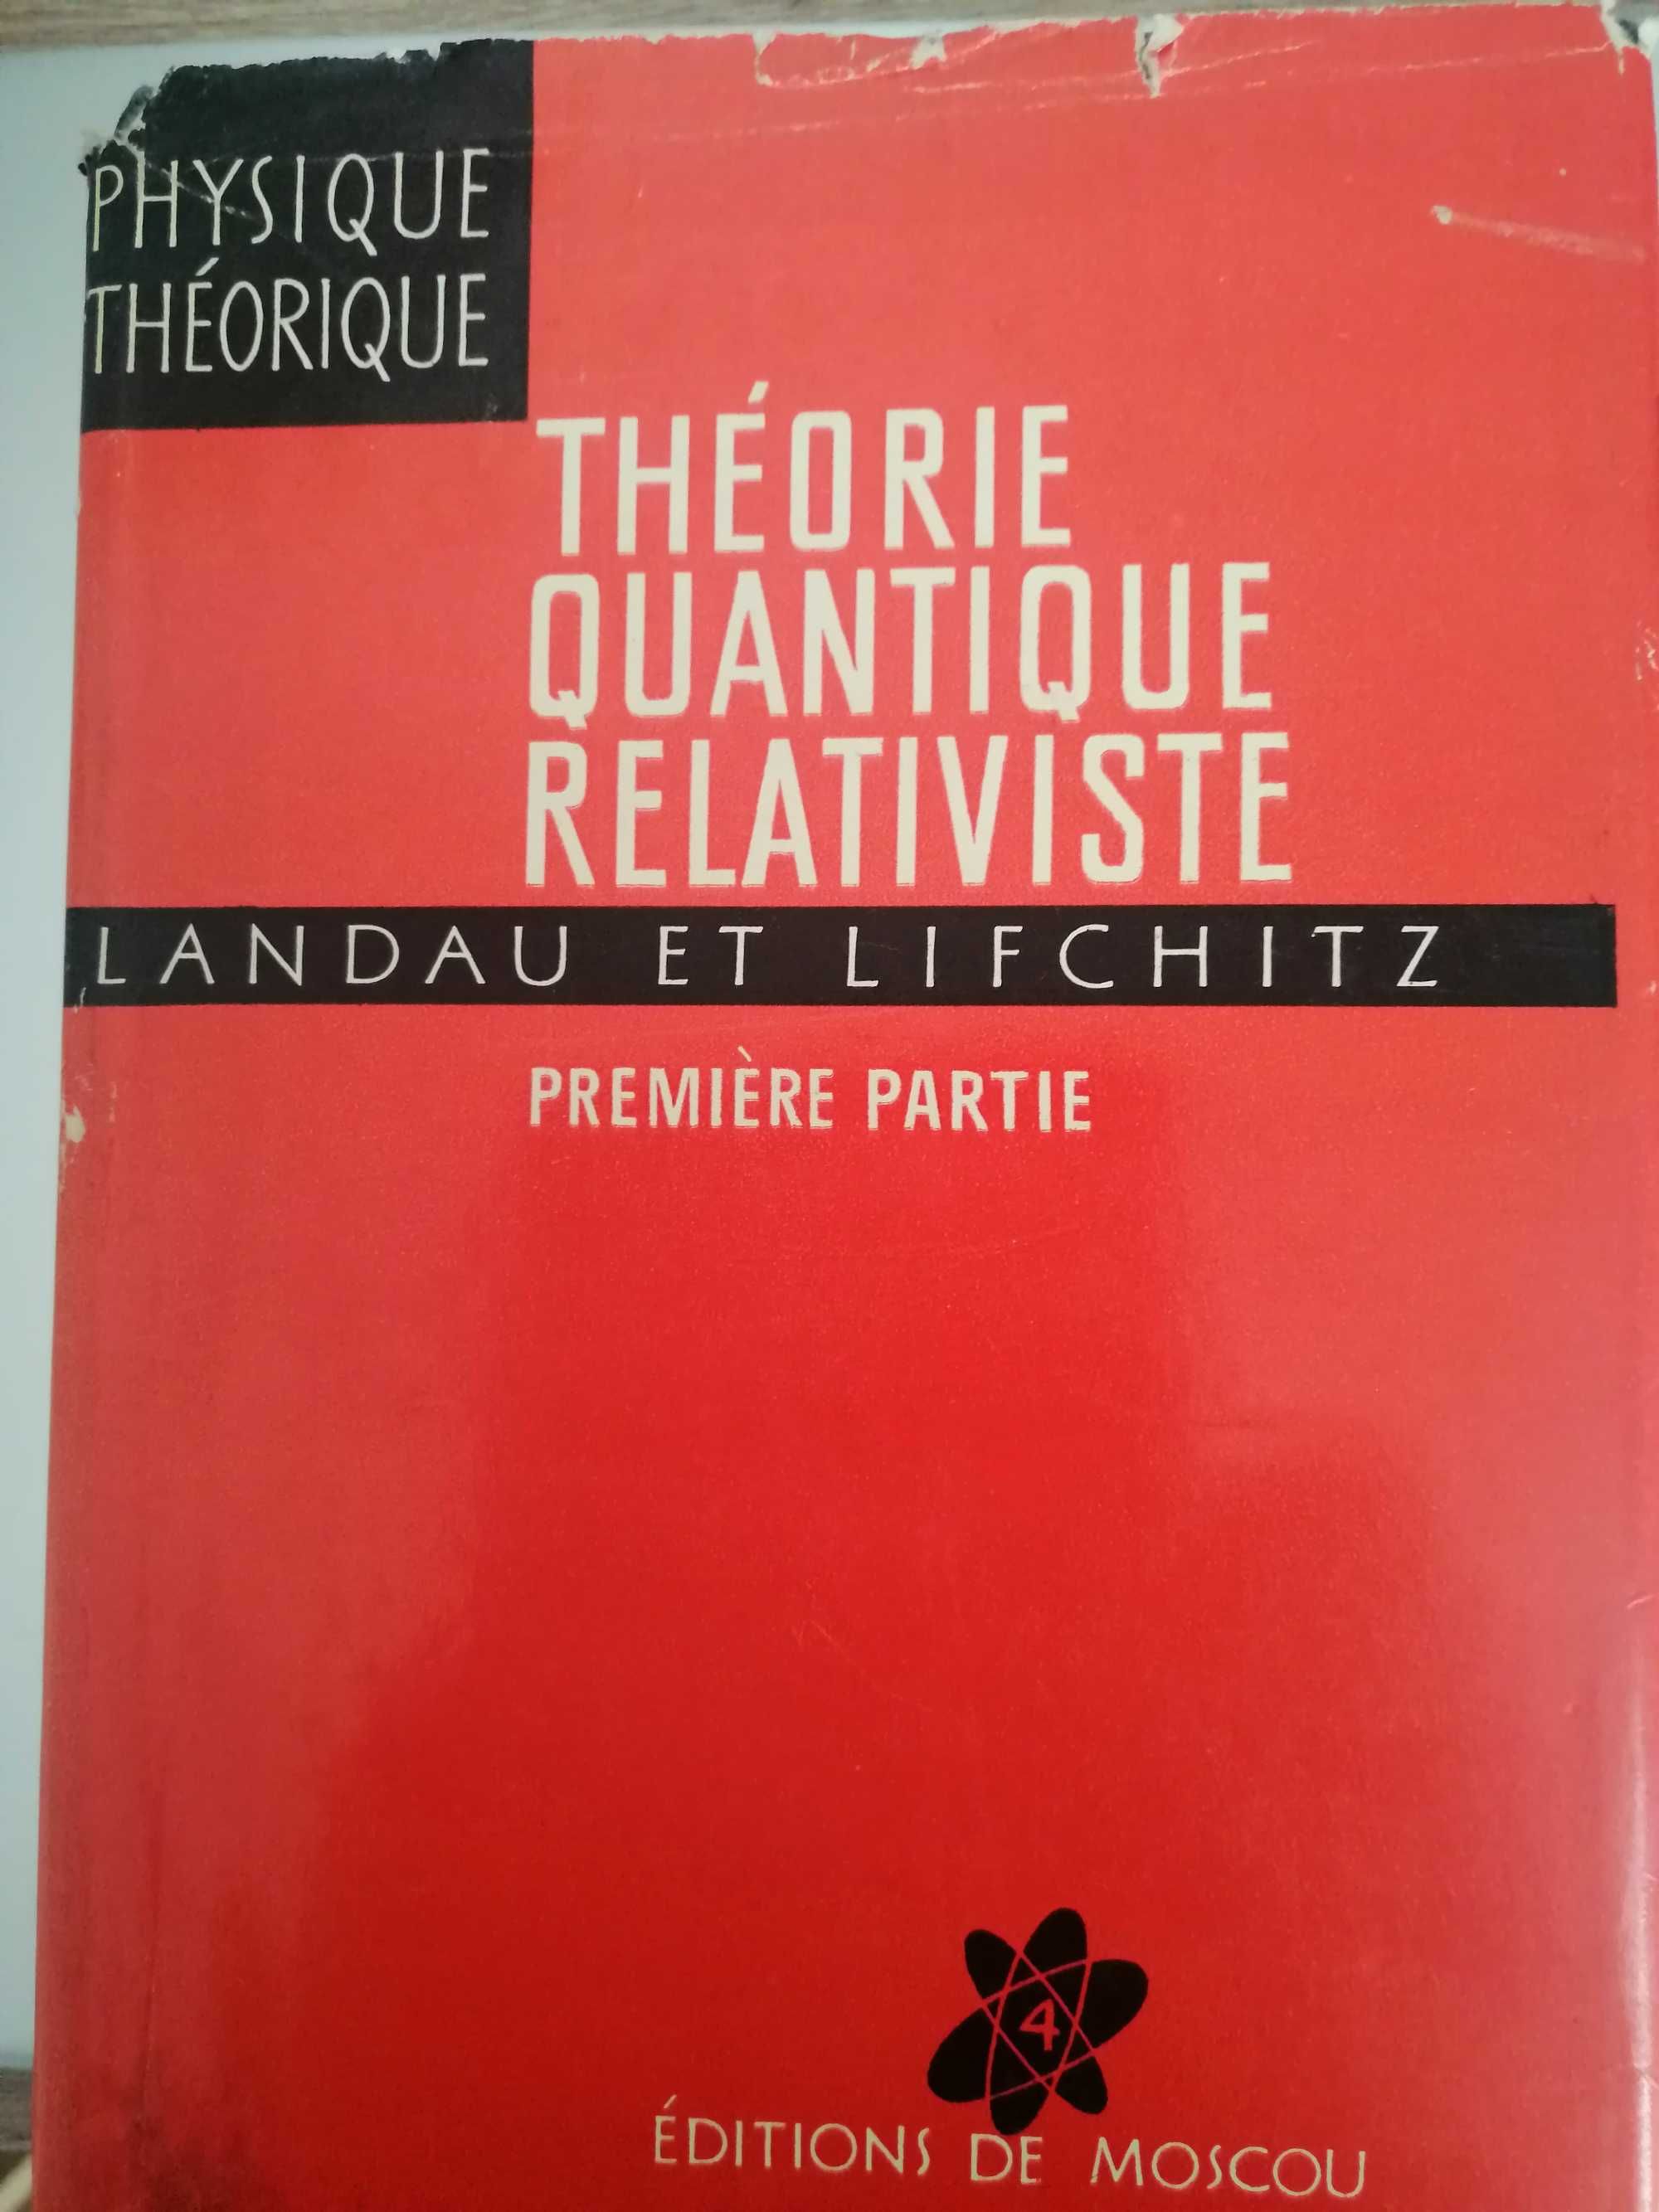 Landau et Lifchitz Physique theorique - 8 volume in limba franceza.